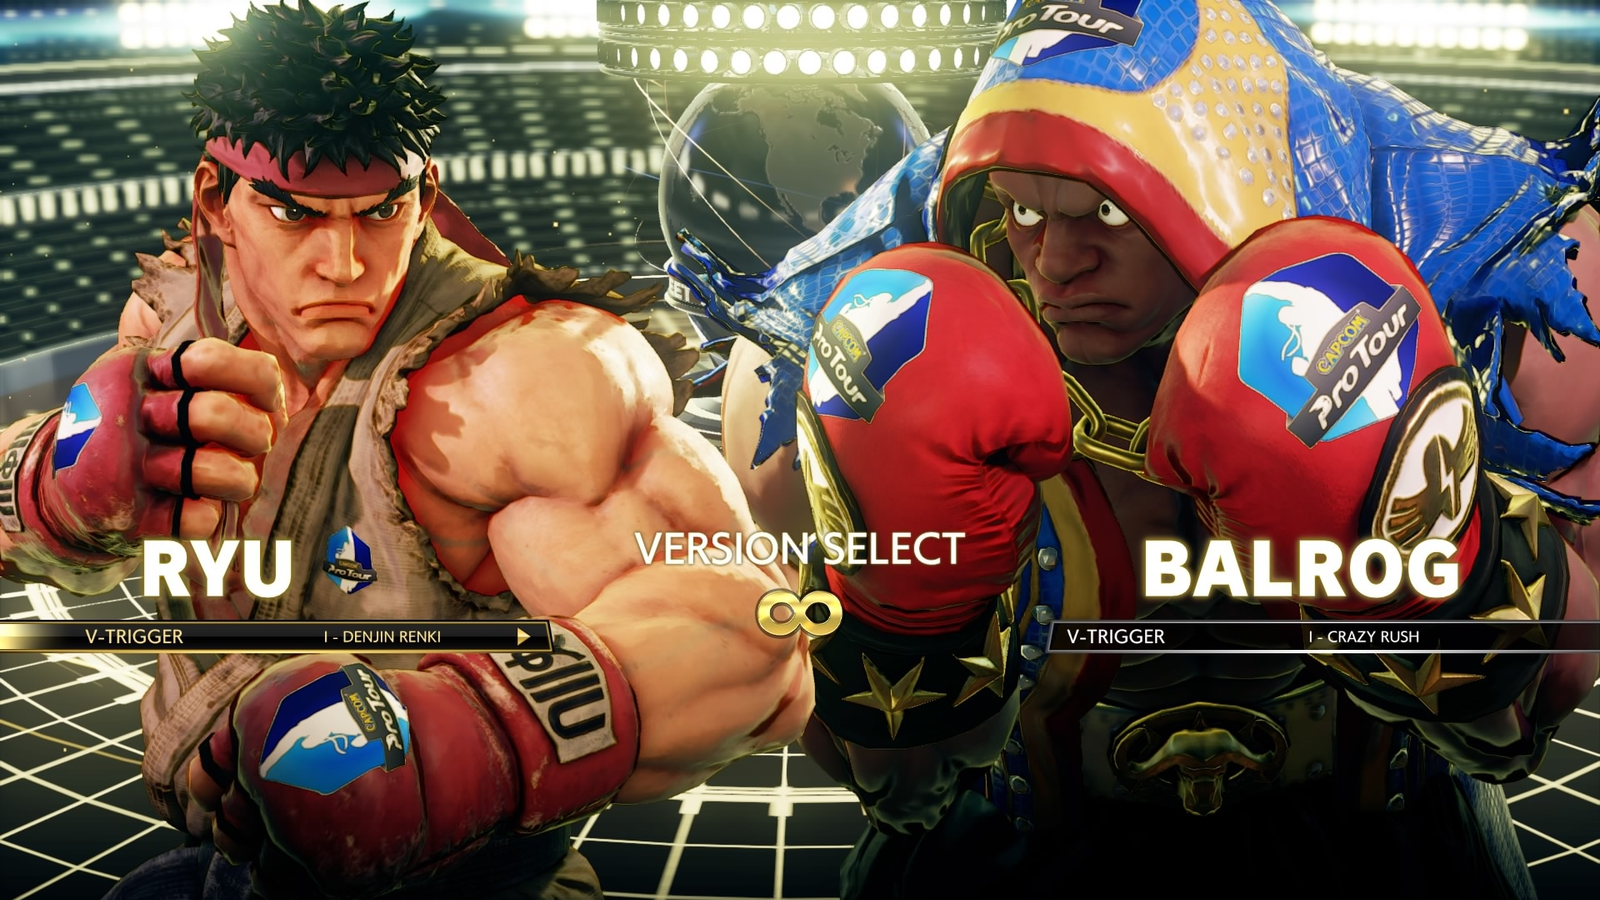 Did video game developer Capcom just give Street Fighter V's